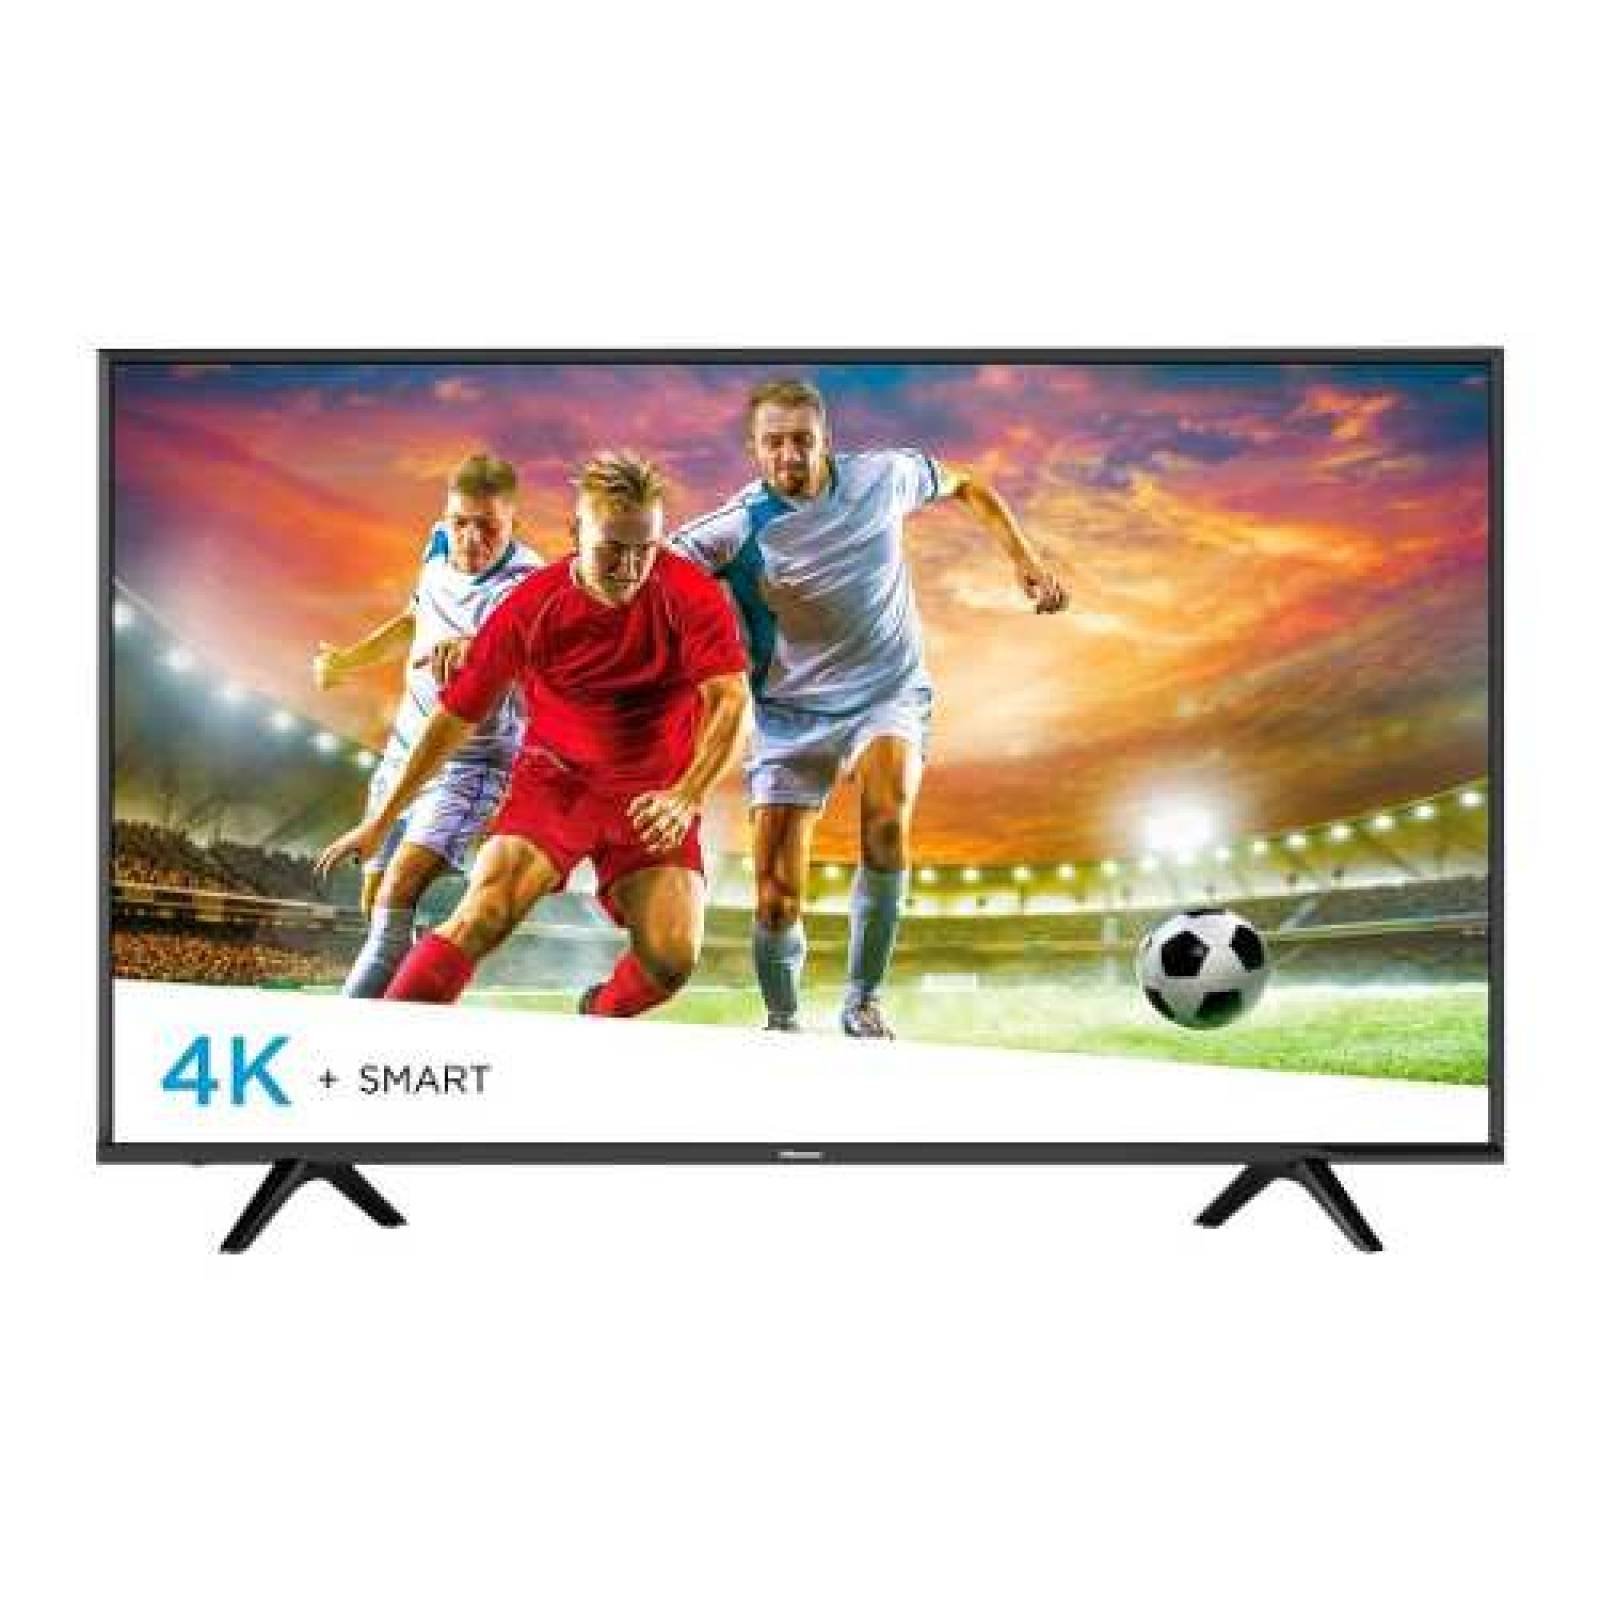 TV HISENSE 43 LED 4K 3840 X 2160P SMART TV